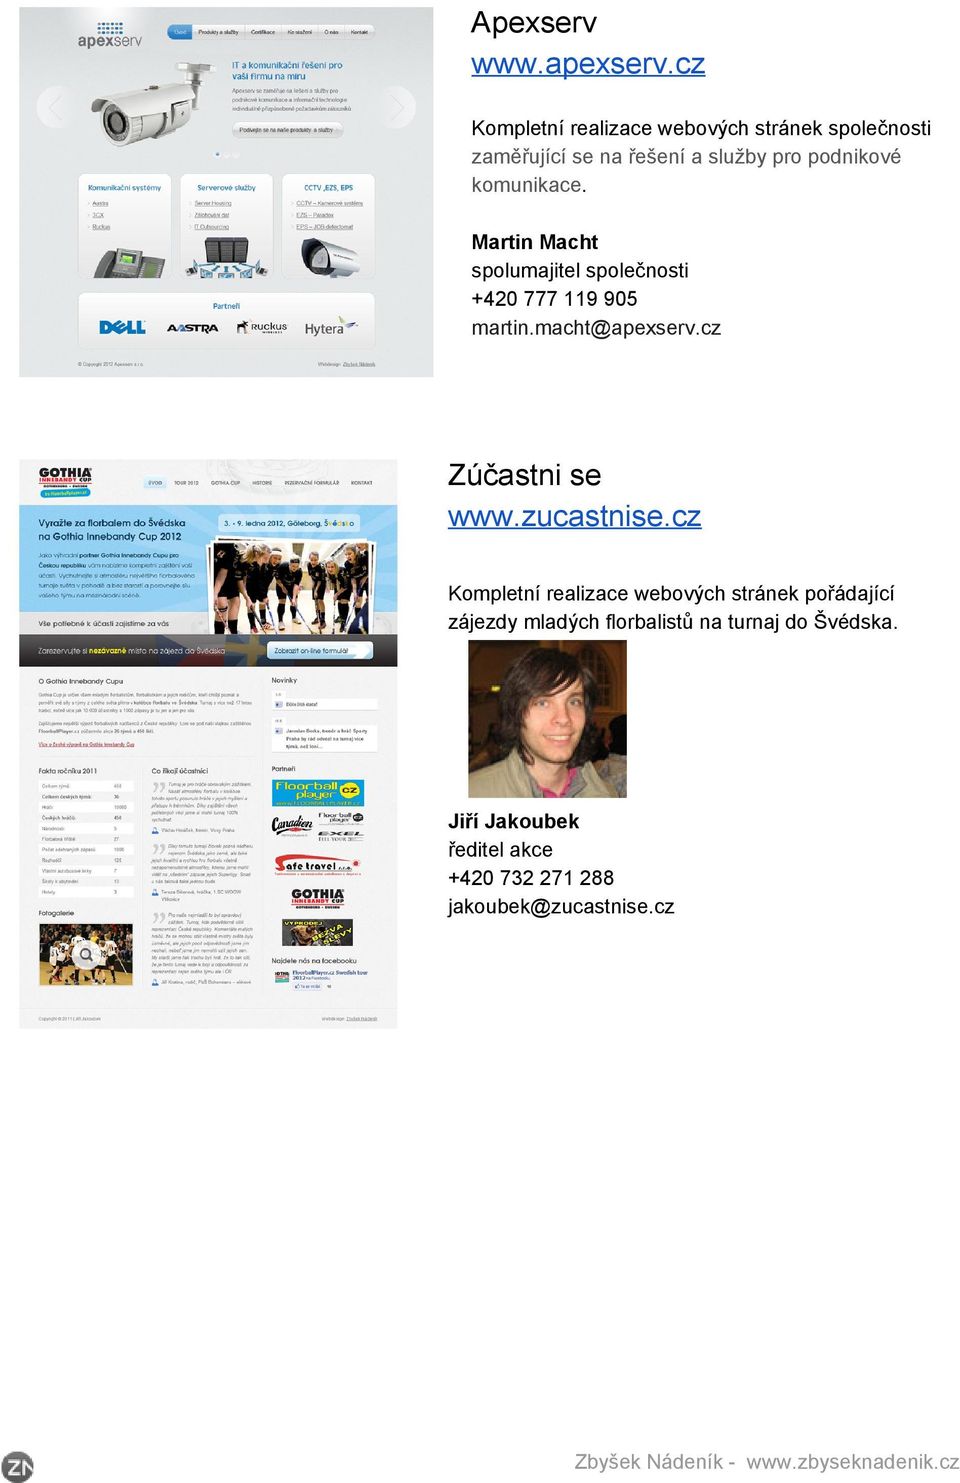 Martin Macht spolumajitel společnosti +420 777 119 905 martin.macht@apexserv.cz Zúčastni se www.zucastnise.